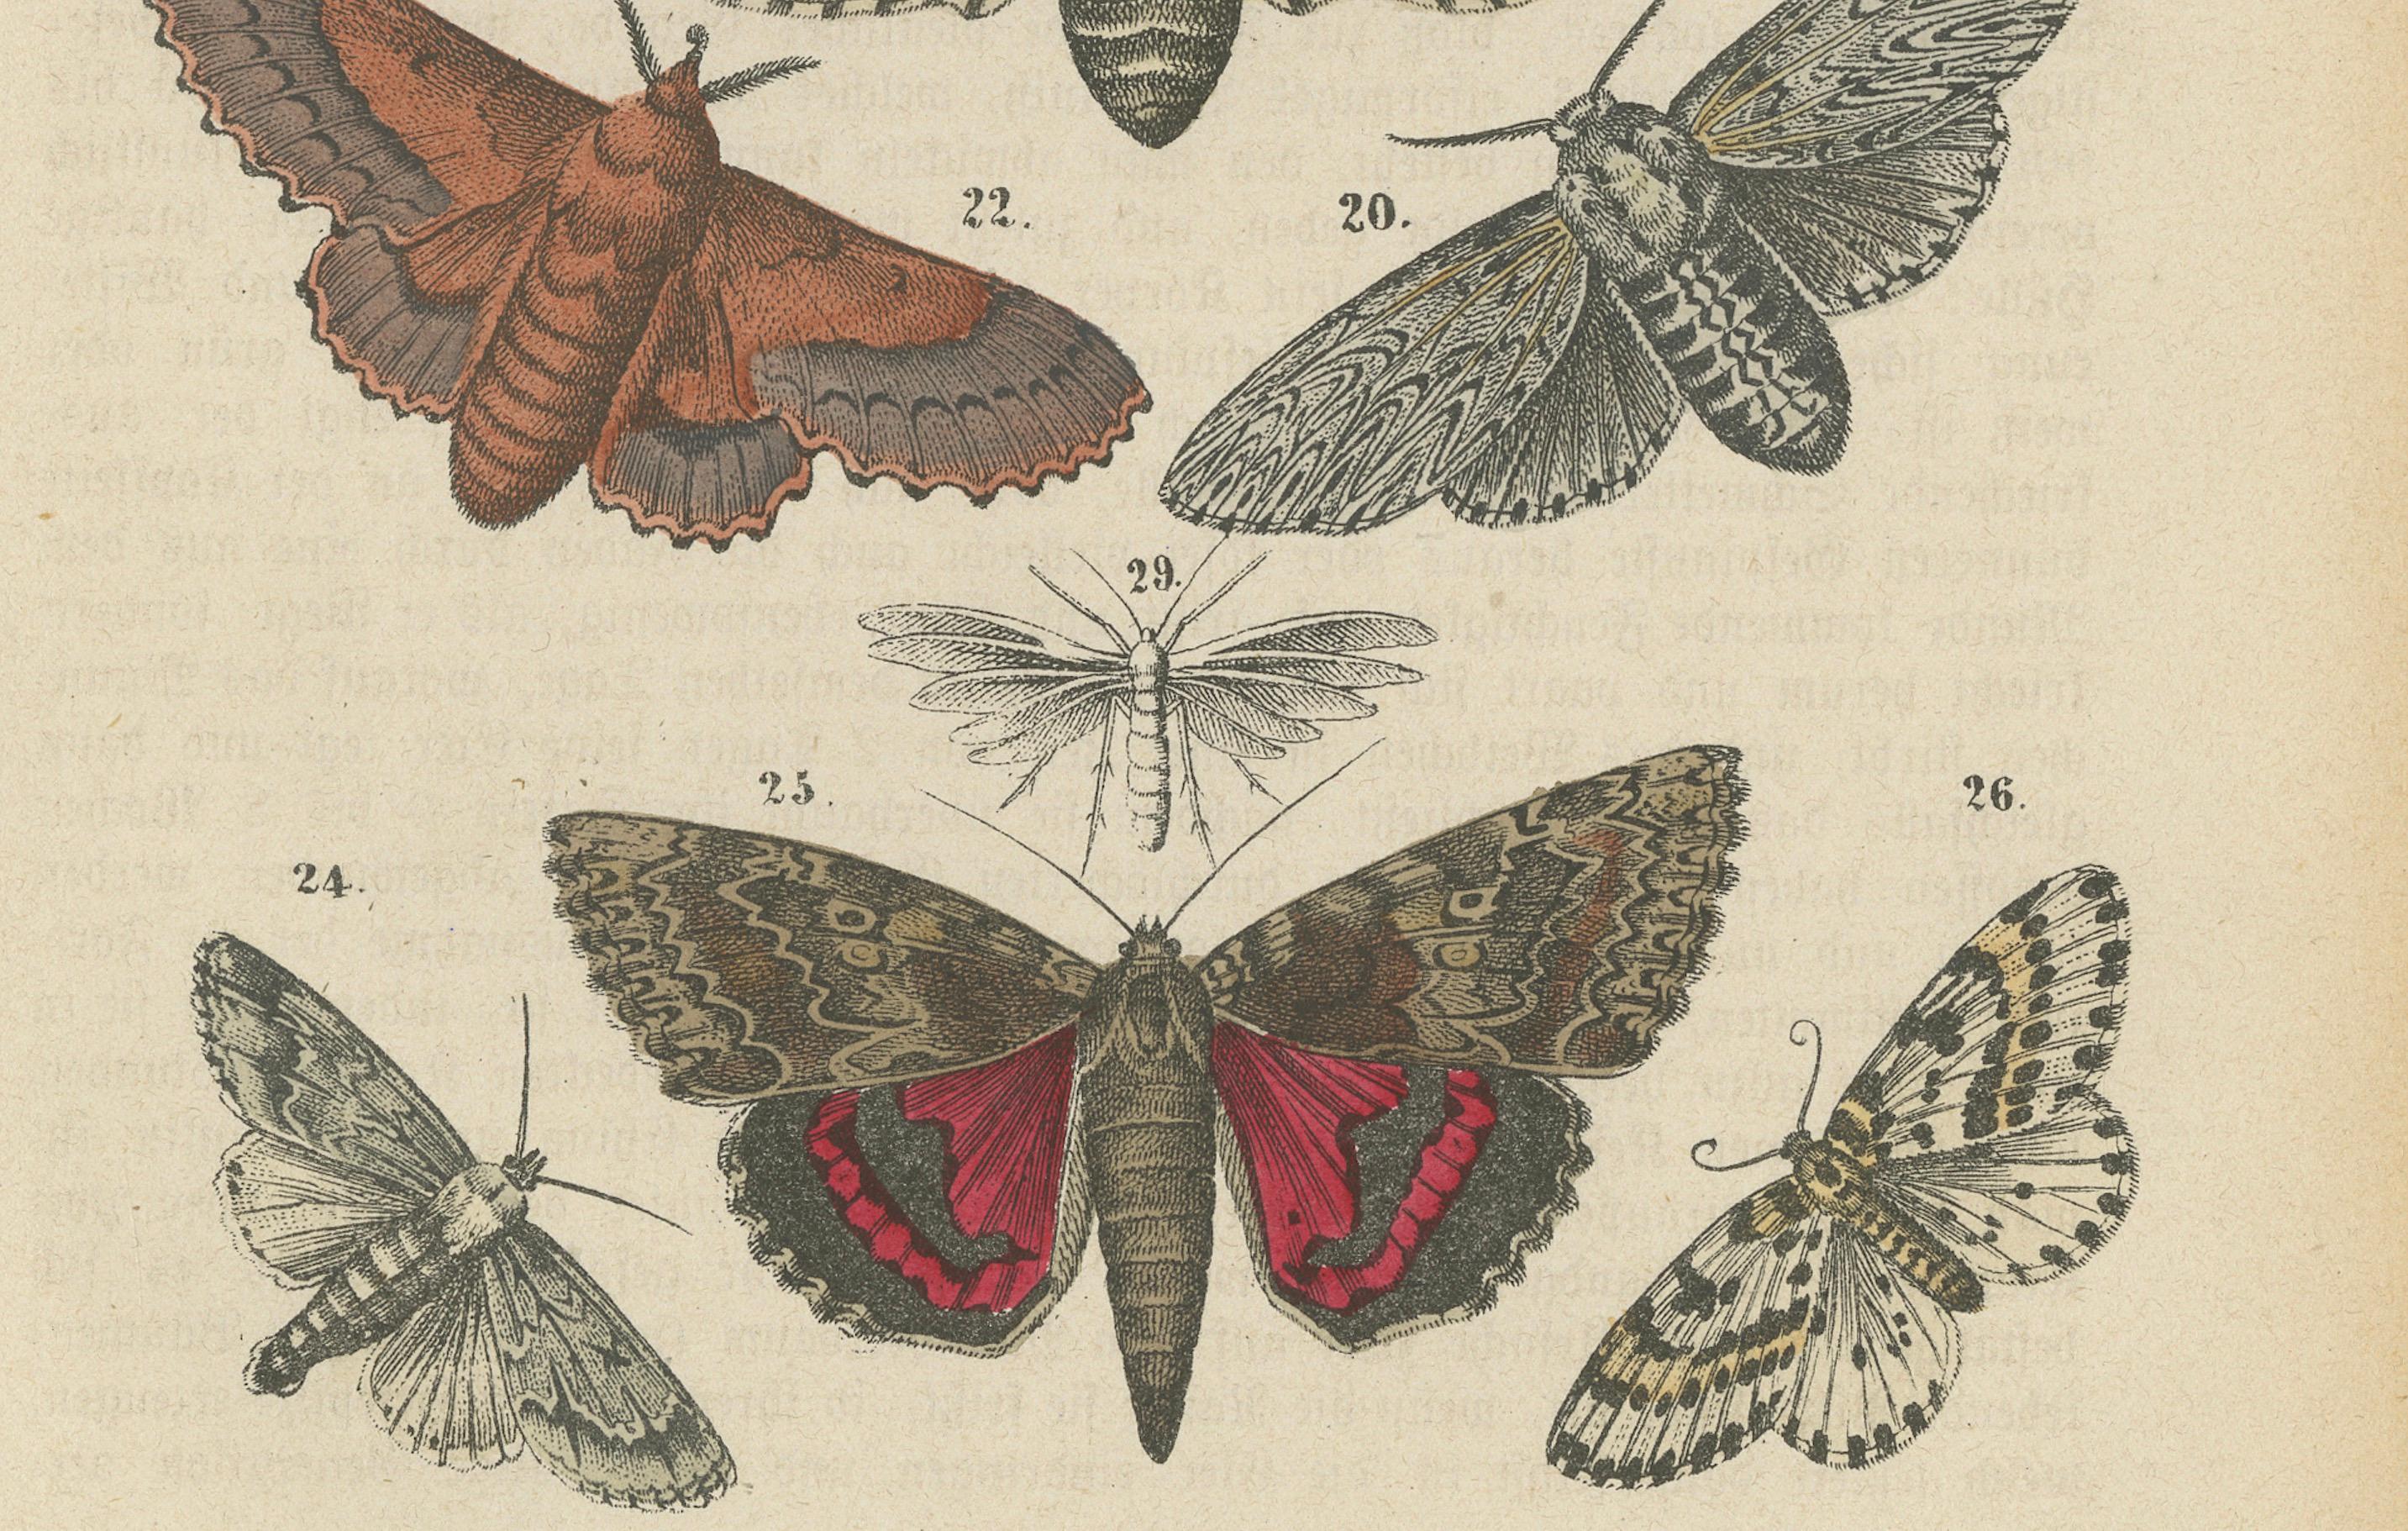 Eine handkolorierte Illustration verschiedener Insektenarten, entstanden um 1866. 

Der Druck ist möglicherweise Teil einer Veröffentlichung von W. G. Sebald, einem bekannten deutschen Schriftsteller, der auch als Max Sebald bekannt ist. Er war ein